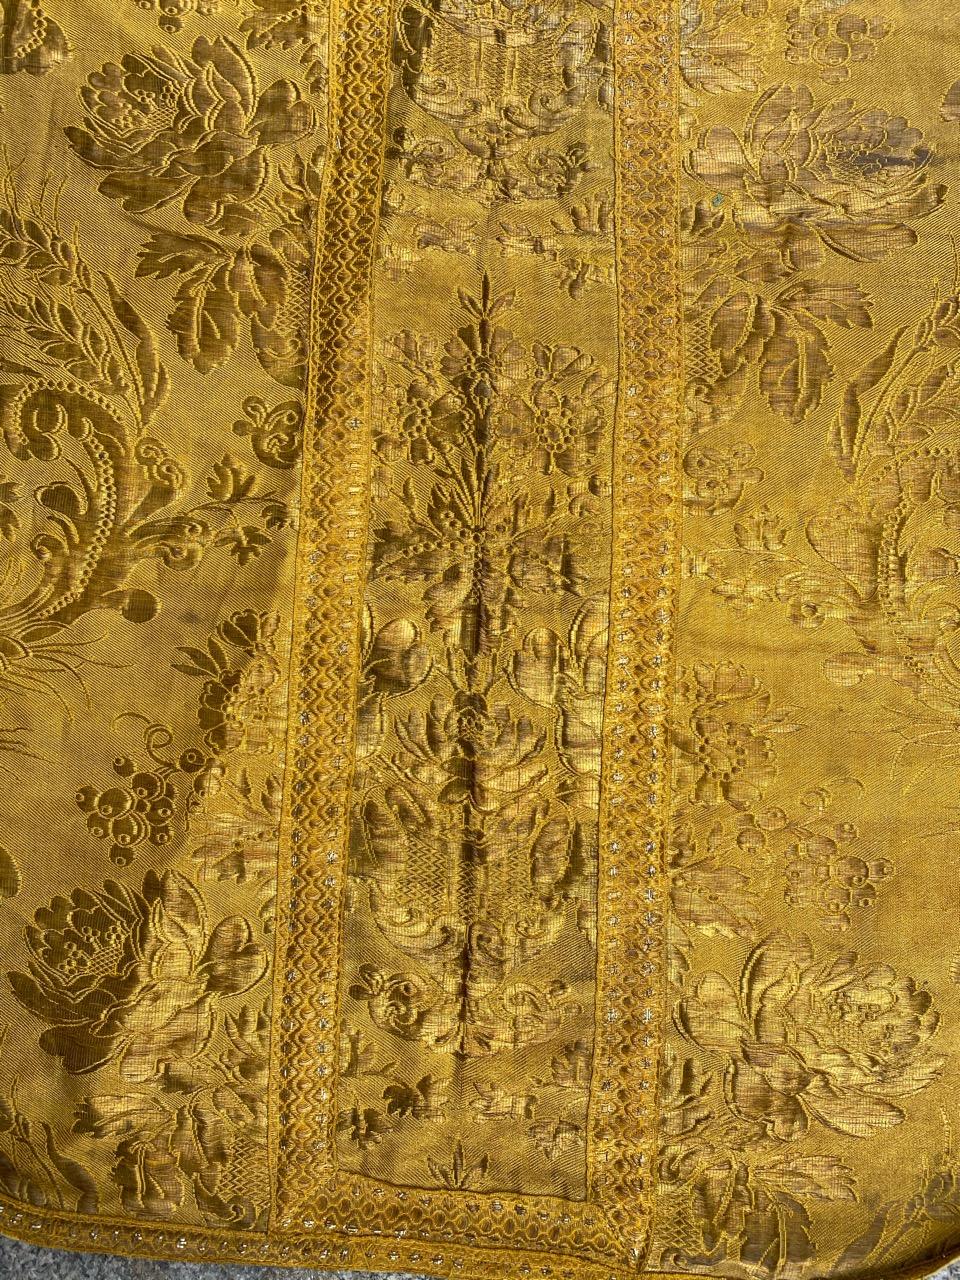 Belle chasuble religieuse chrétienne du début du 20e siècle pour prêtre, entièrement tissée avec des fils métalliques dorés, et de beaux motifs floraux.

✨✨✨
